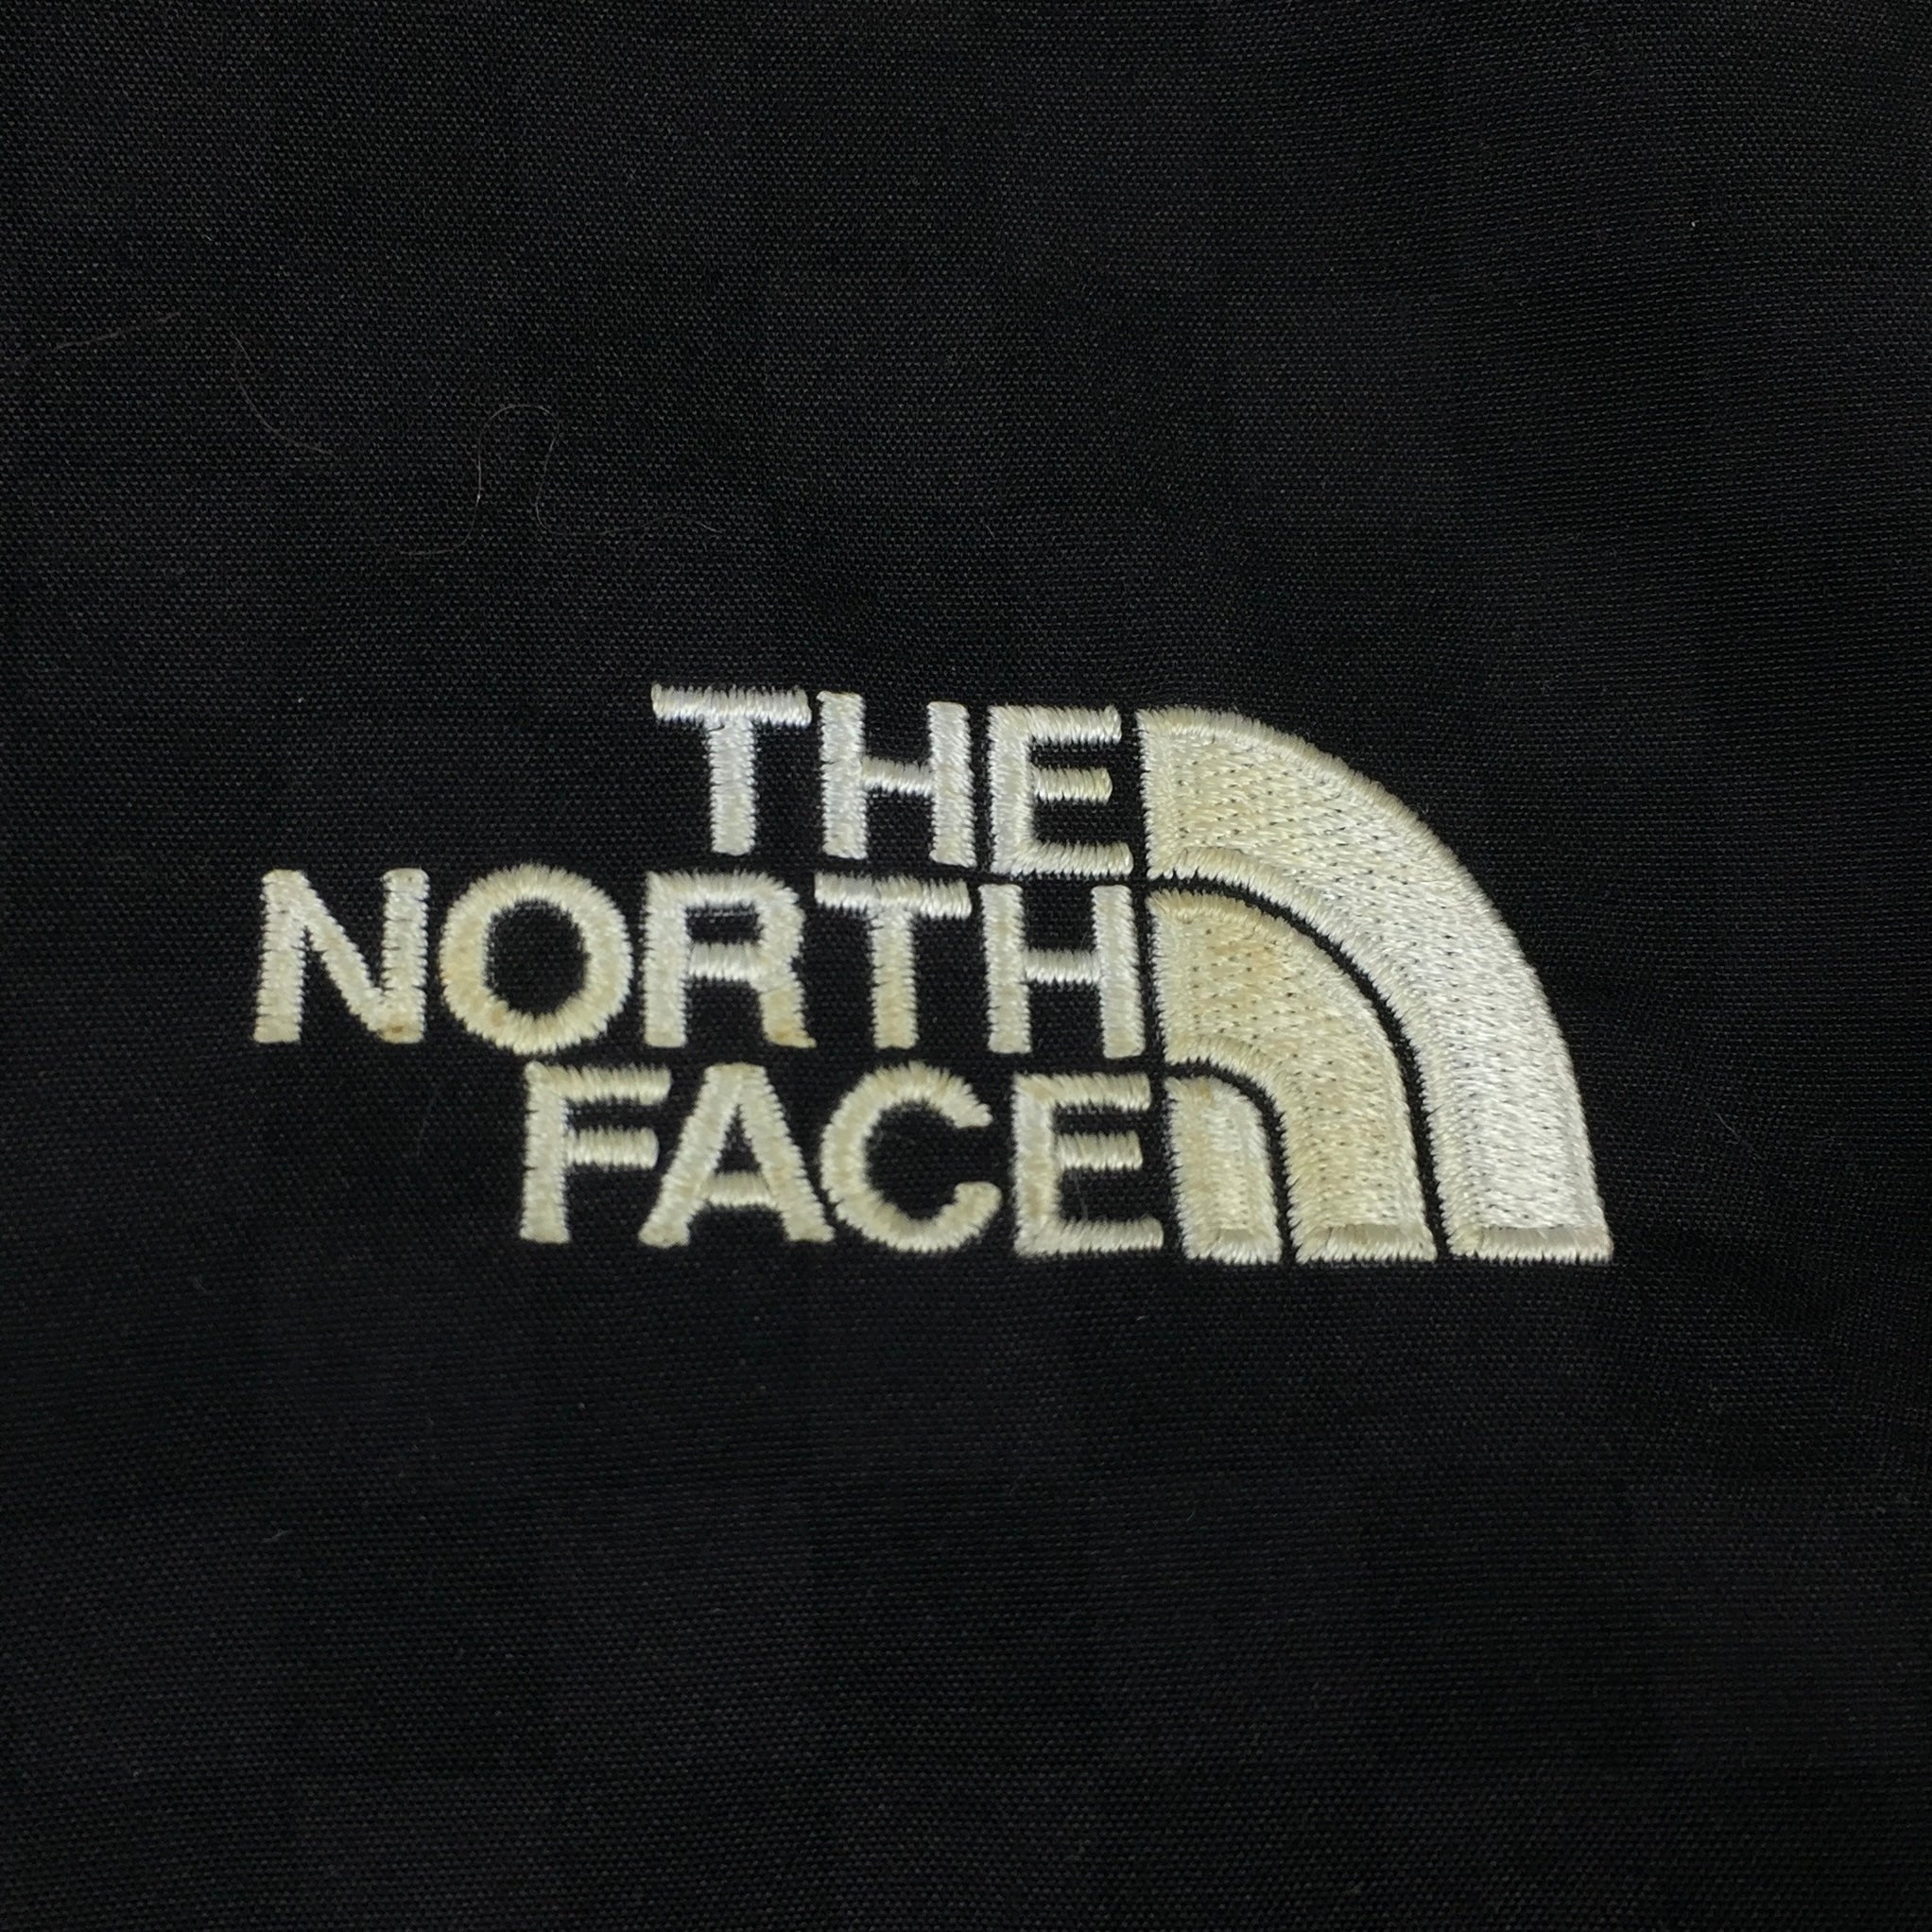 2011 Supreme x The North Face Checkered Black Pullover